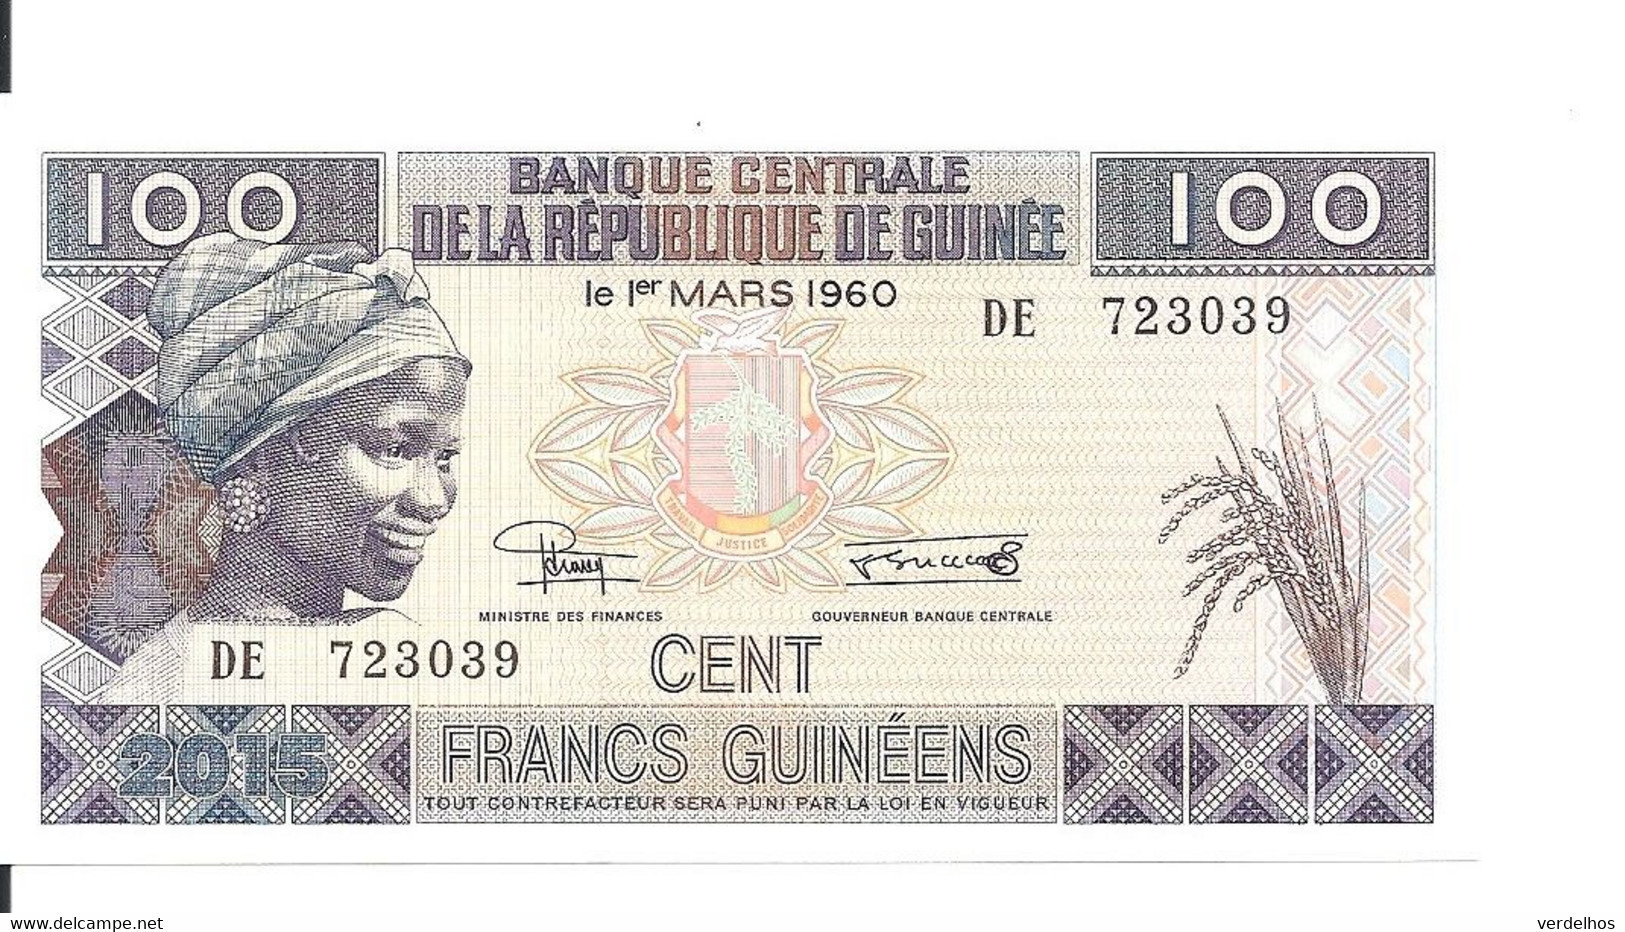 GUINEE 100 FRANCS 2015 UNC P A47 - Guinea